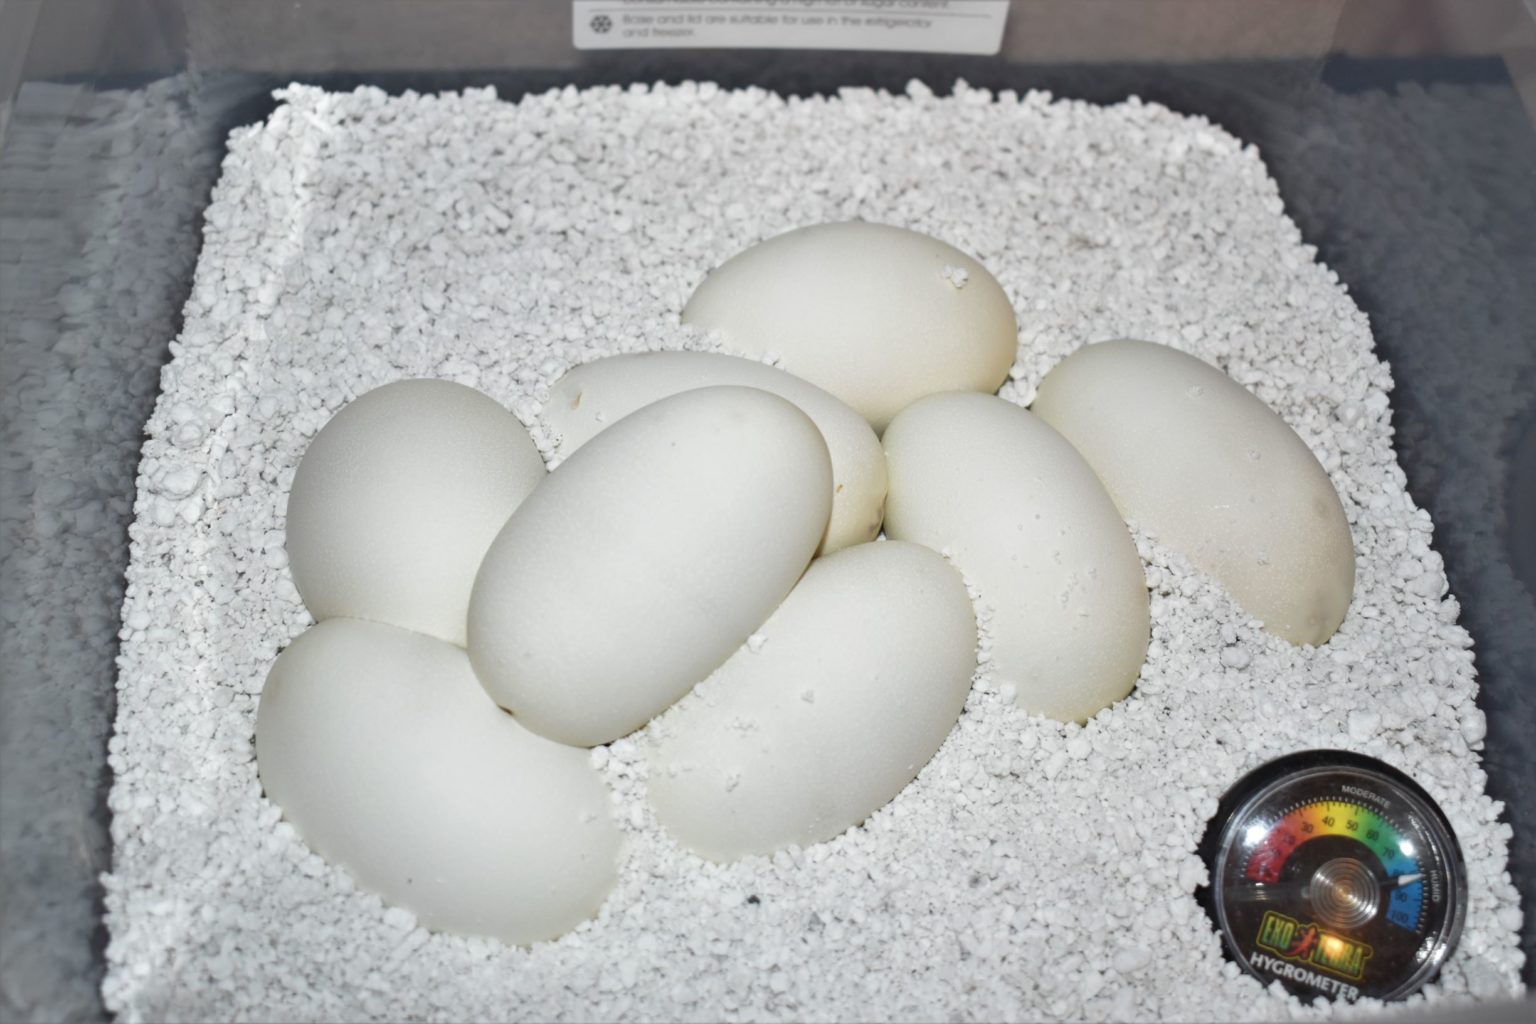 Ball python egg incubator